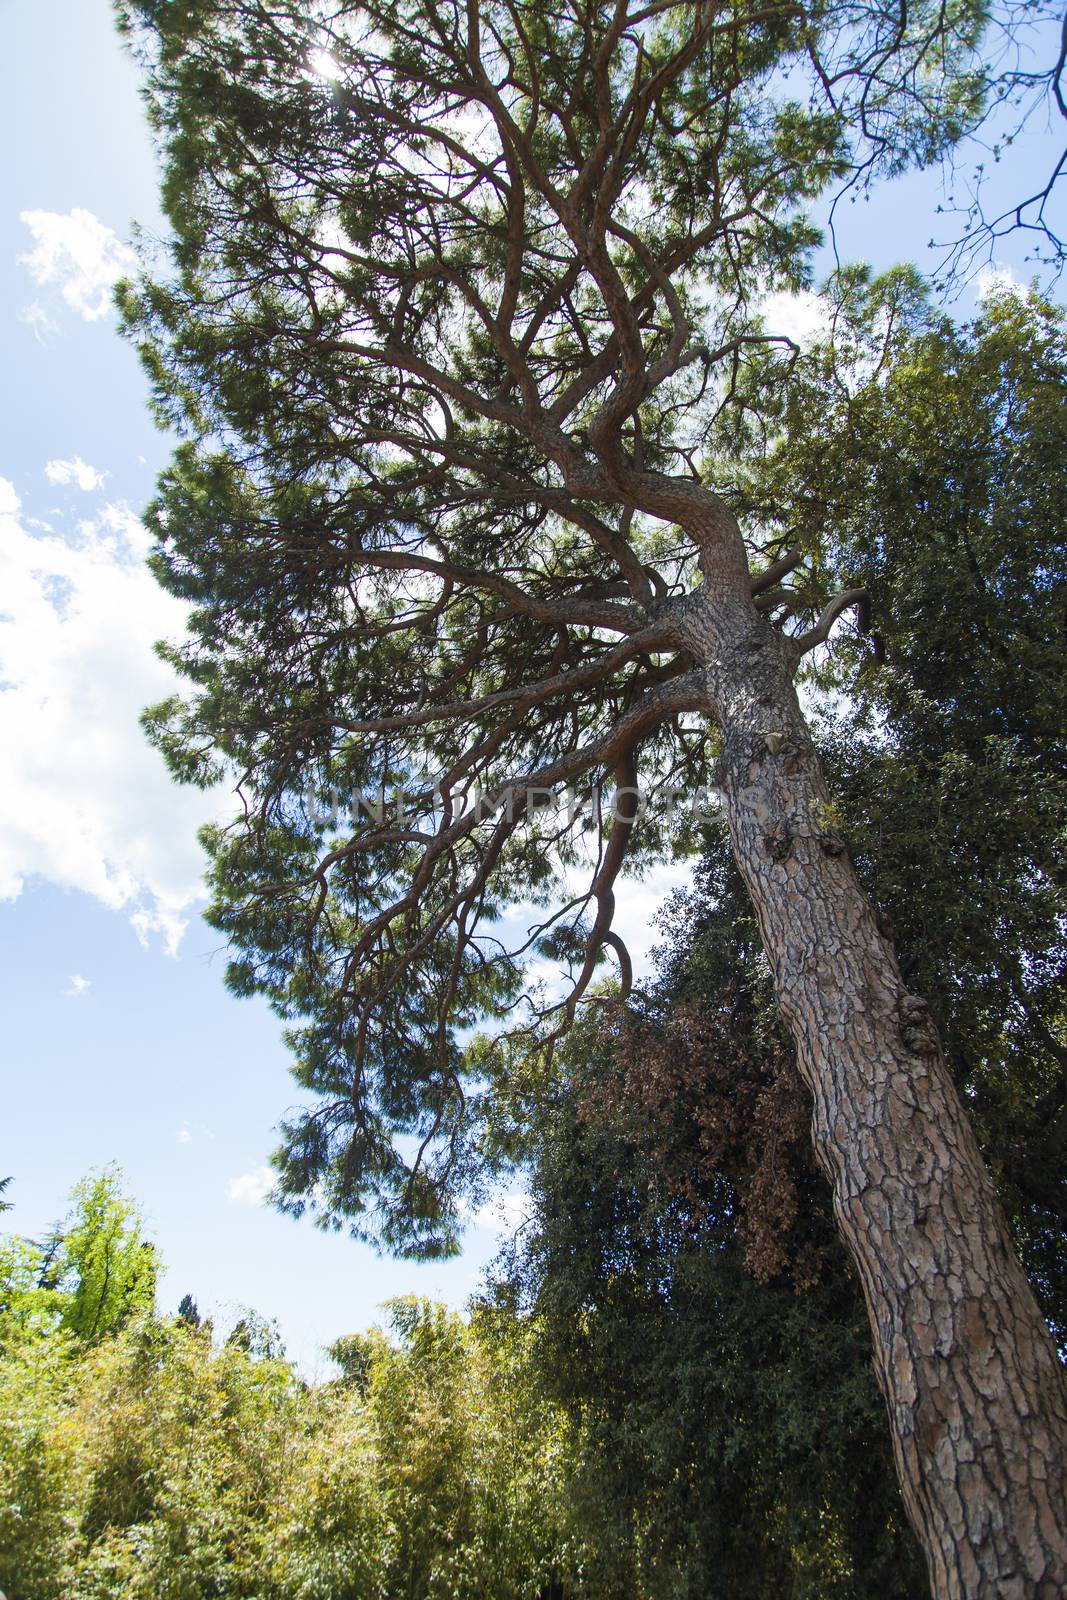 Southern pine by selezenj